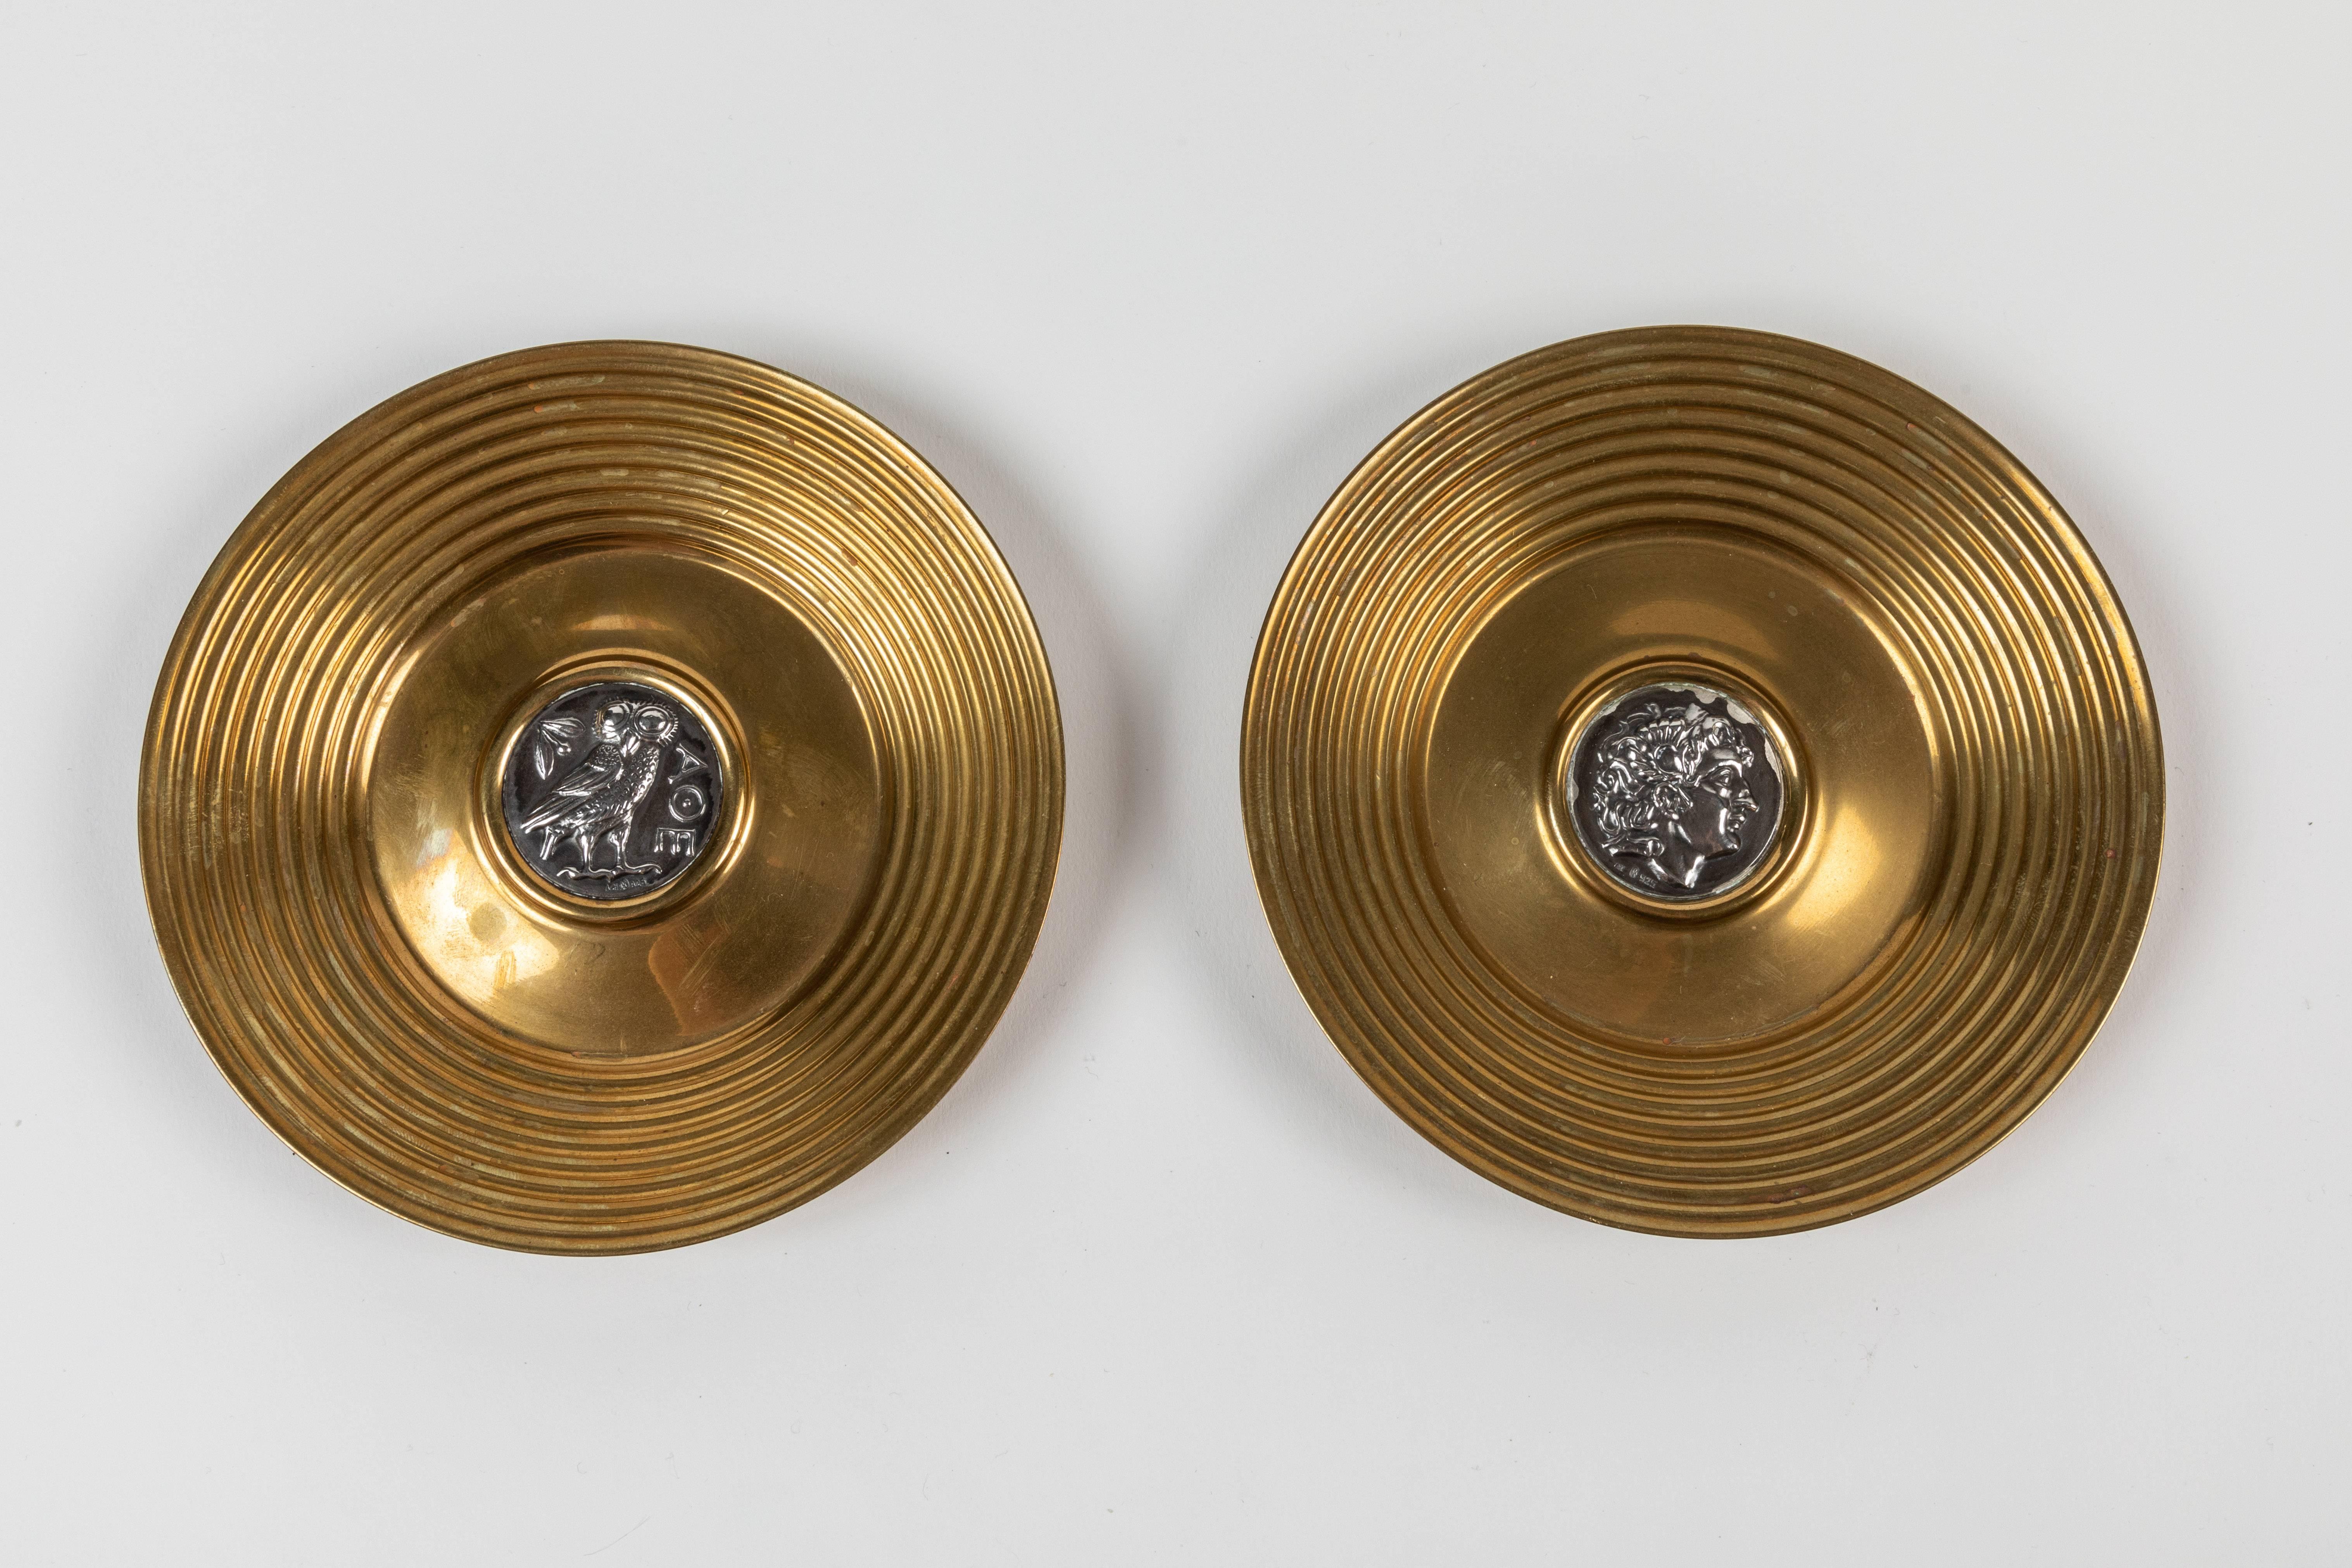 Ein Paar Schmuckschalen aus Messing und Sterlingsilber von Ilias Lalaounis, Griechenland. In der Mitte jedes Tellers ist eine griechische Sterlingsilbermünze (Replik) eingelassen. Auf der einen Münze ist die 